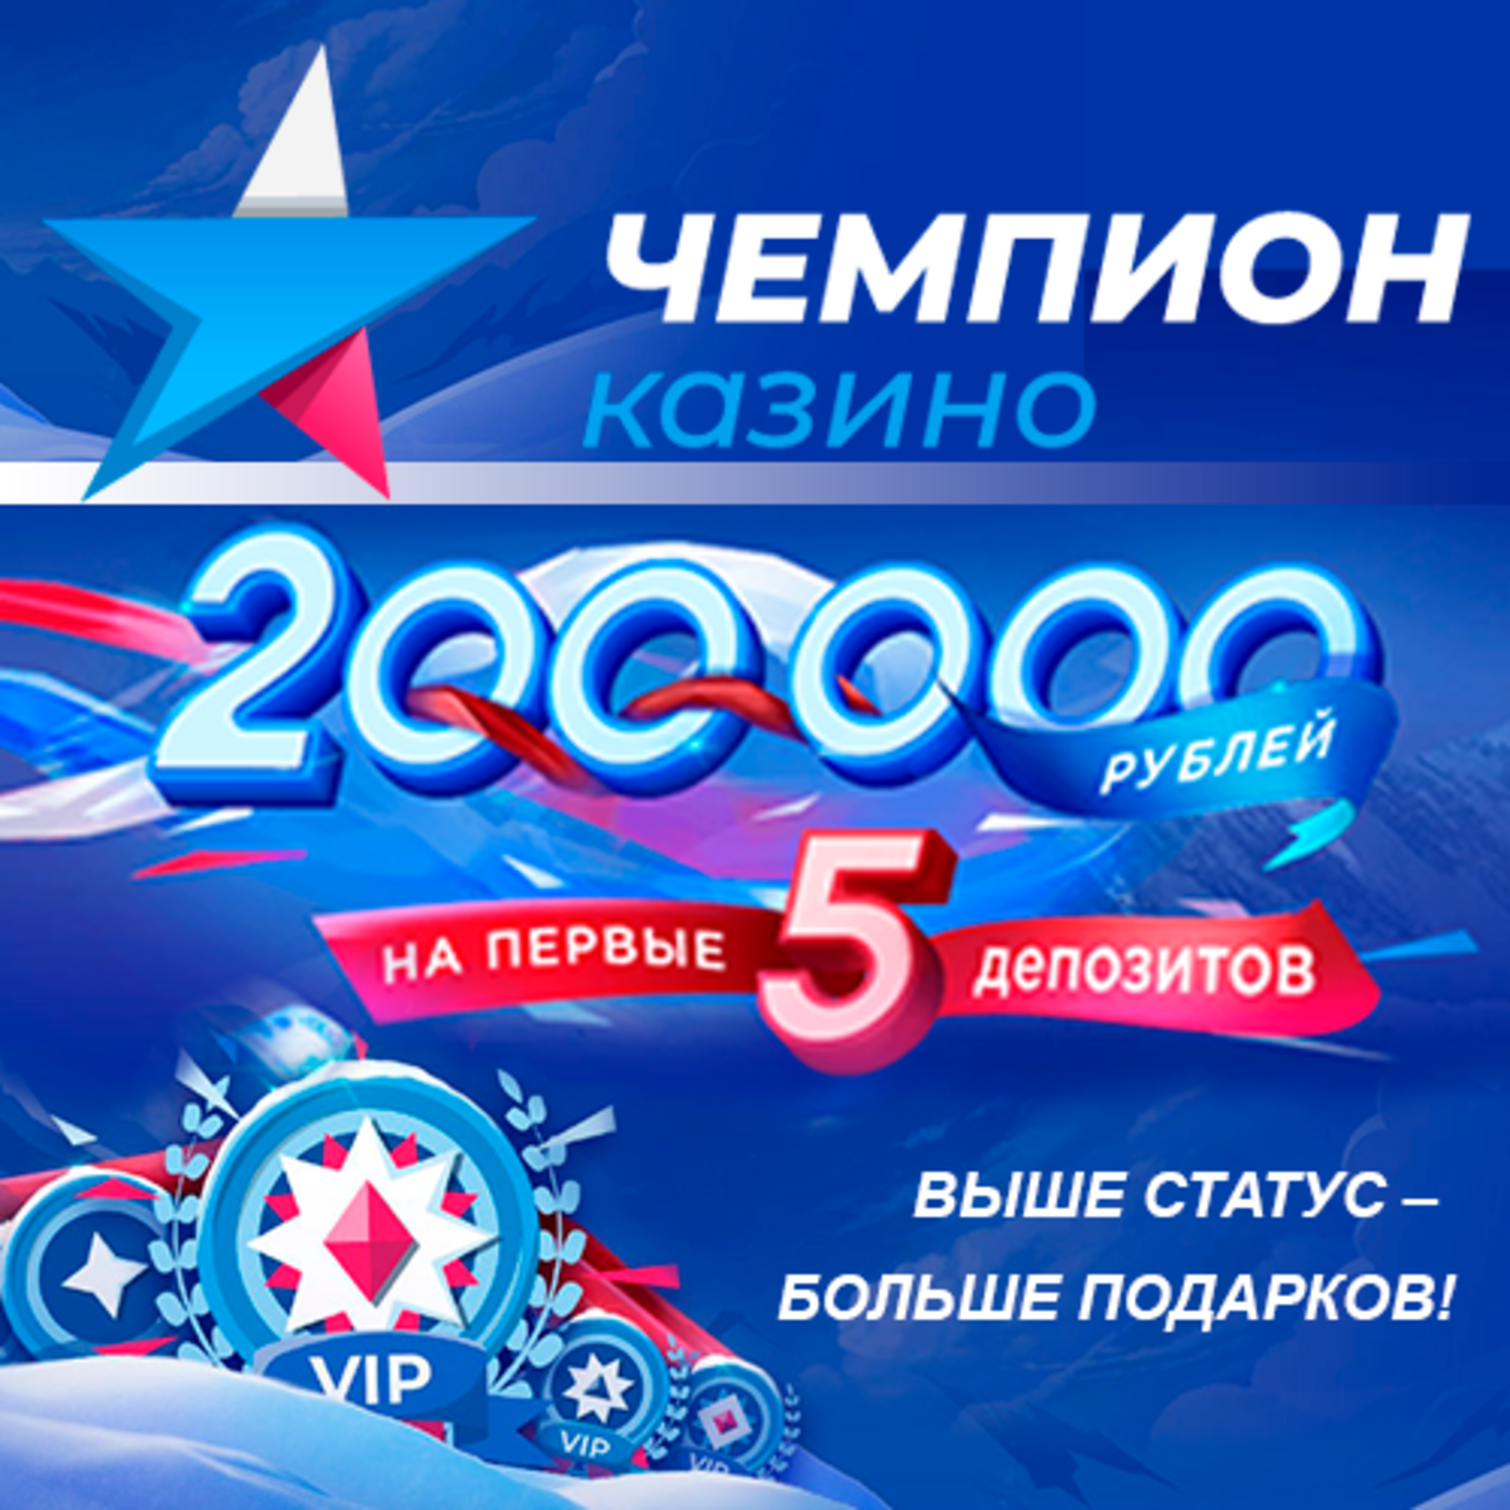 Champion casino games скачать покердом на реальные деньги на русском языке